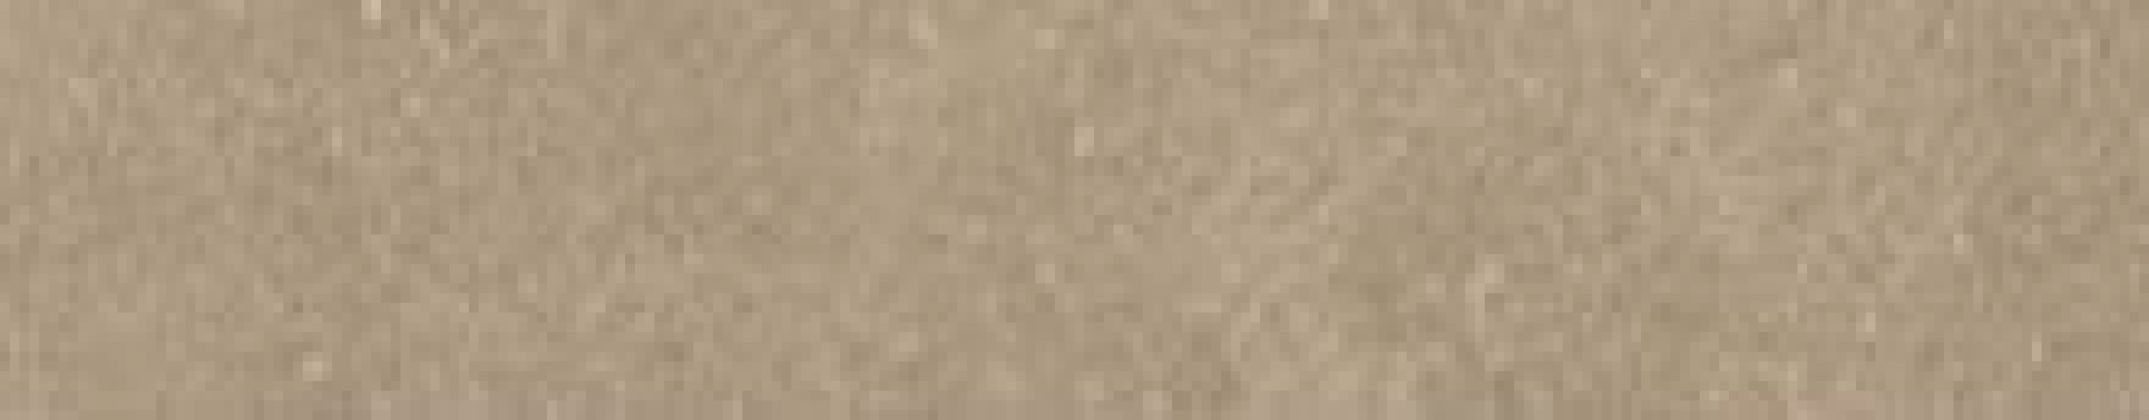 Плинтус Newcon коричневый R10A 7РЕК 7,5x60 K948253R0001VTE0